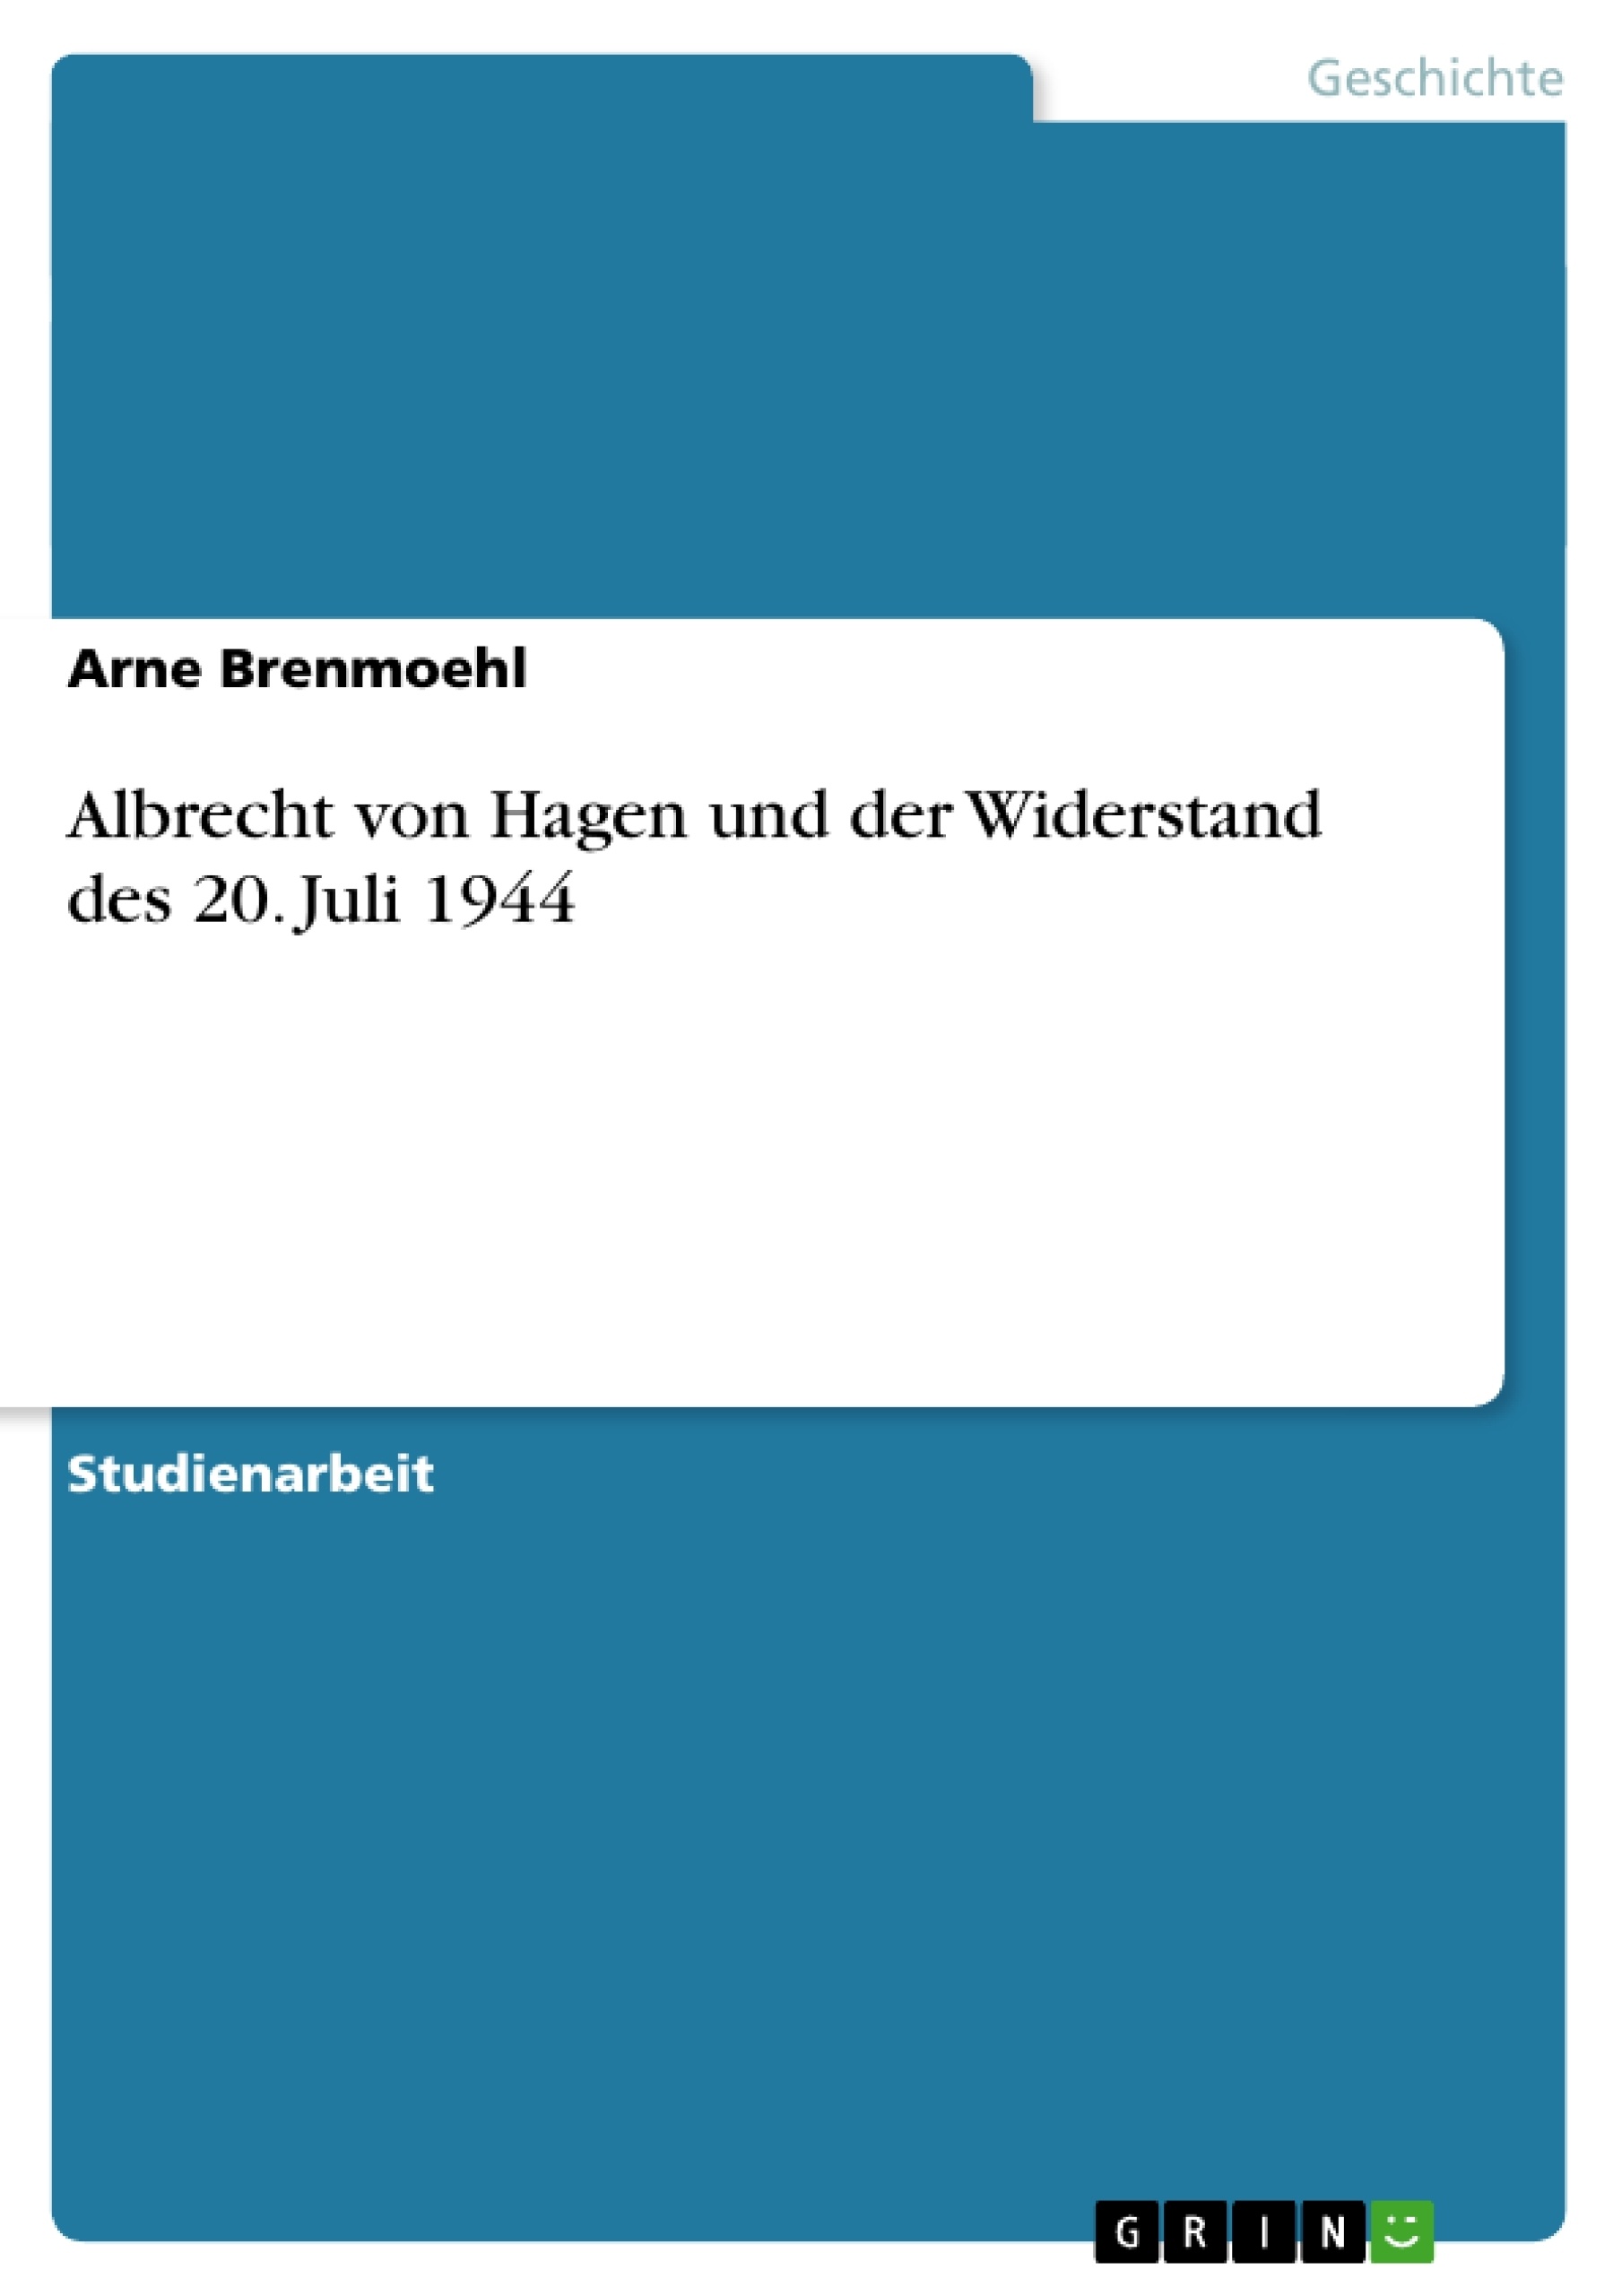 Title: Albrecht von Hagen und der Widerstand des 20. Juli 1944